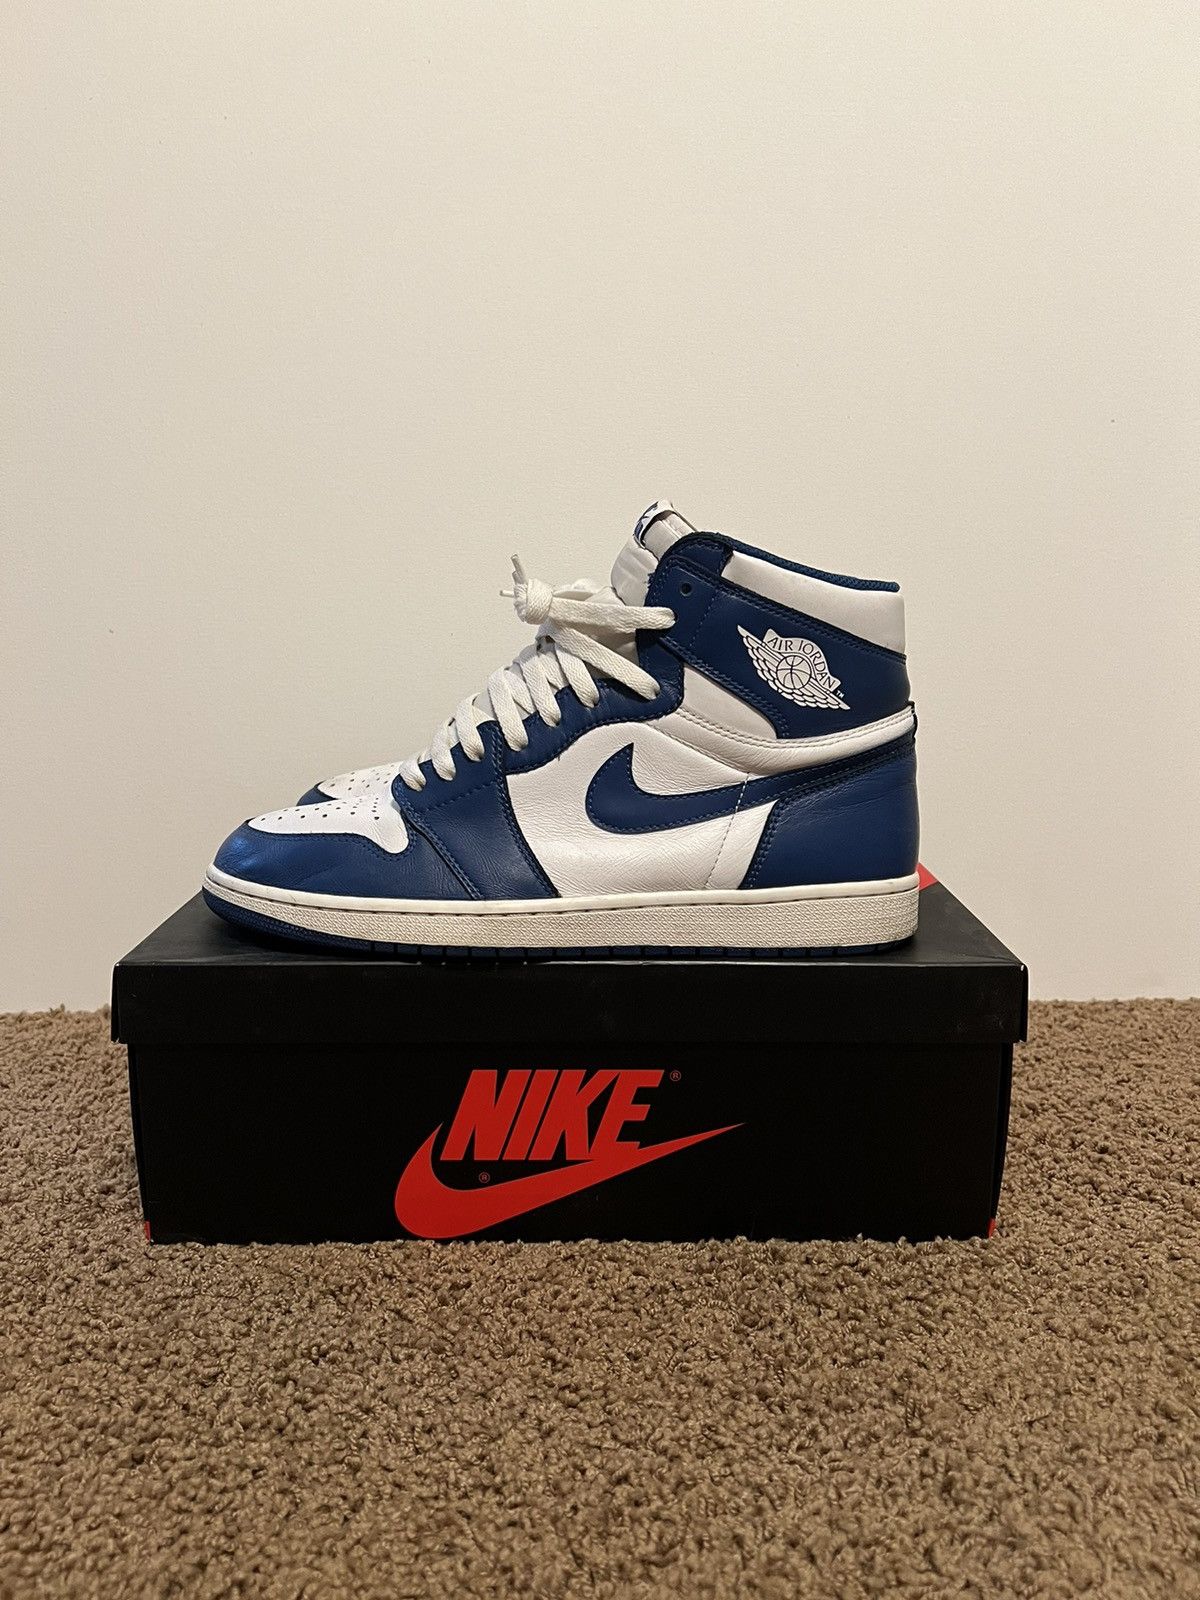 Pre-owned Jordan Nike Jordan 1 High Og “storm Blue” Size 11 Shoes